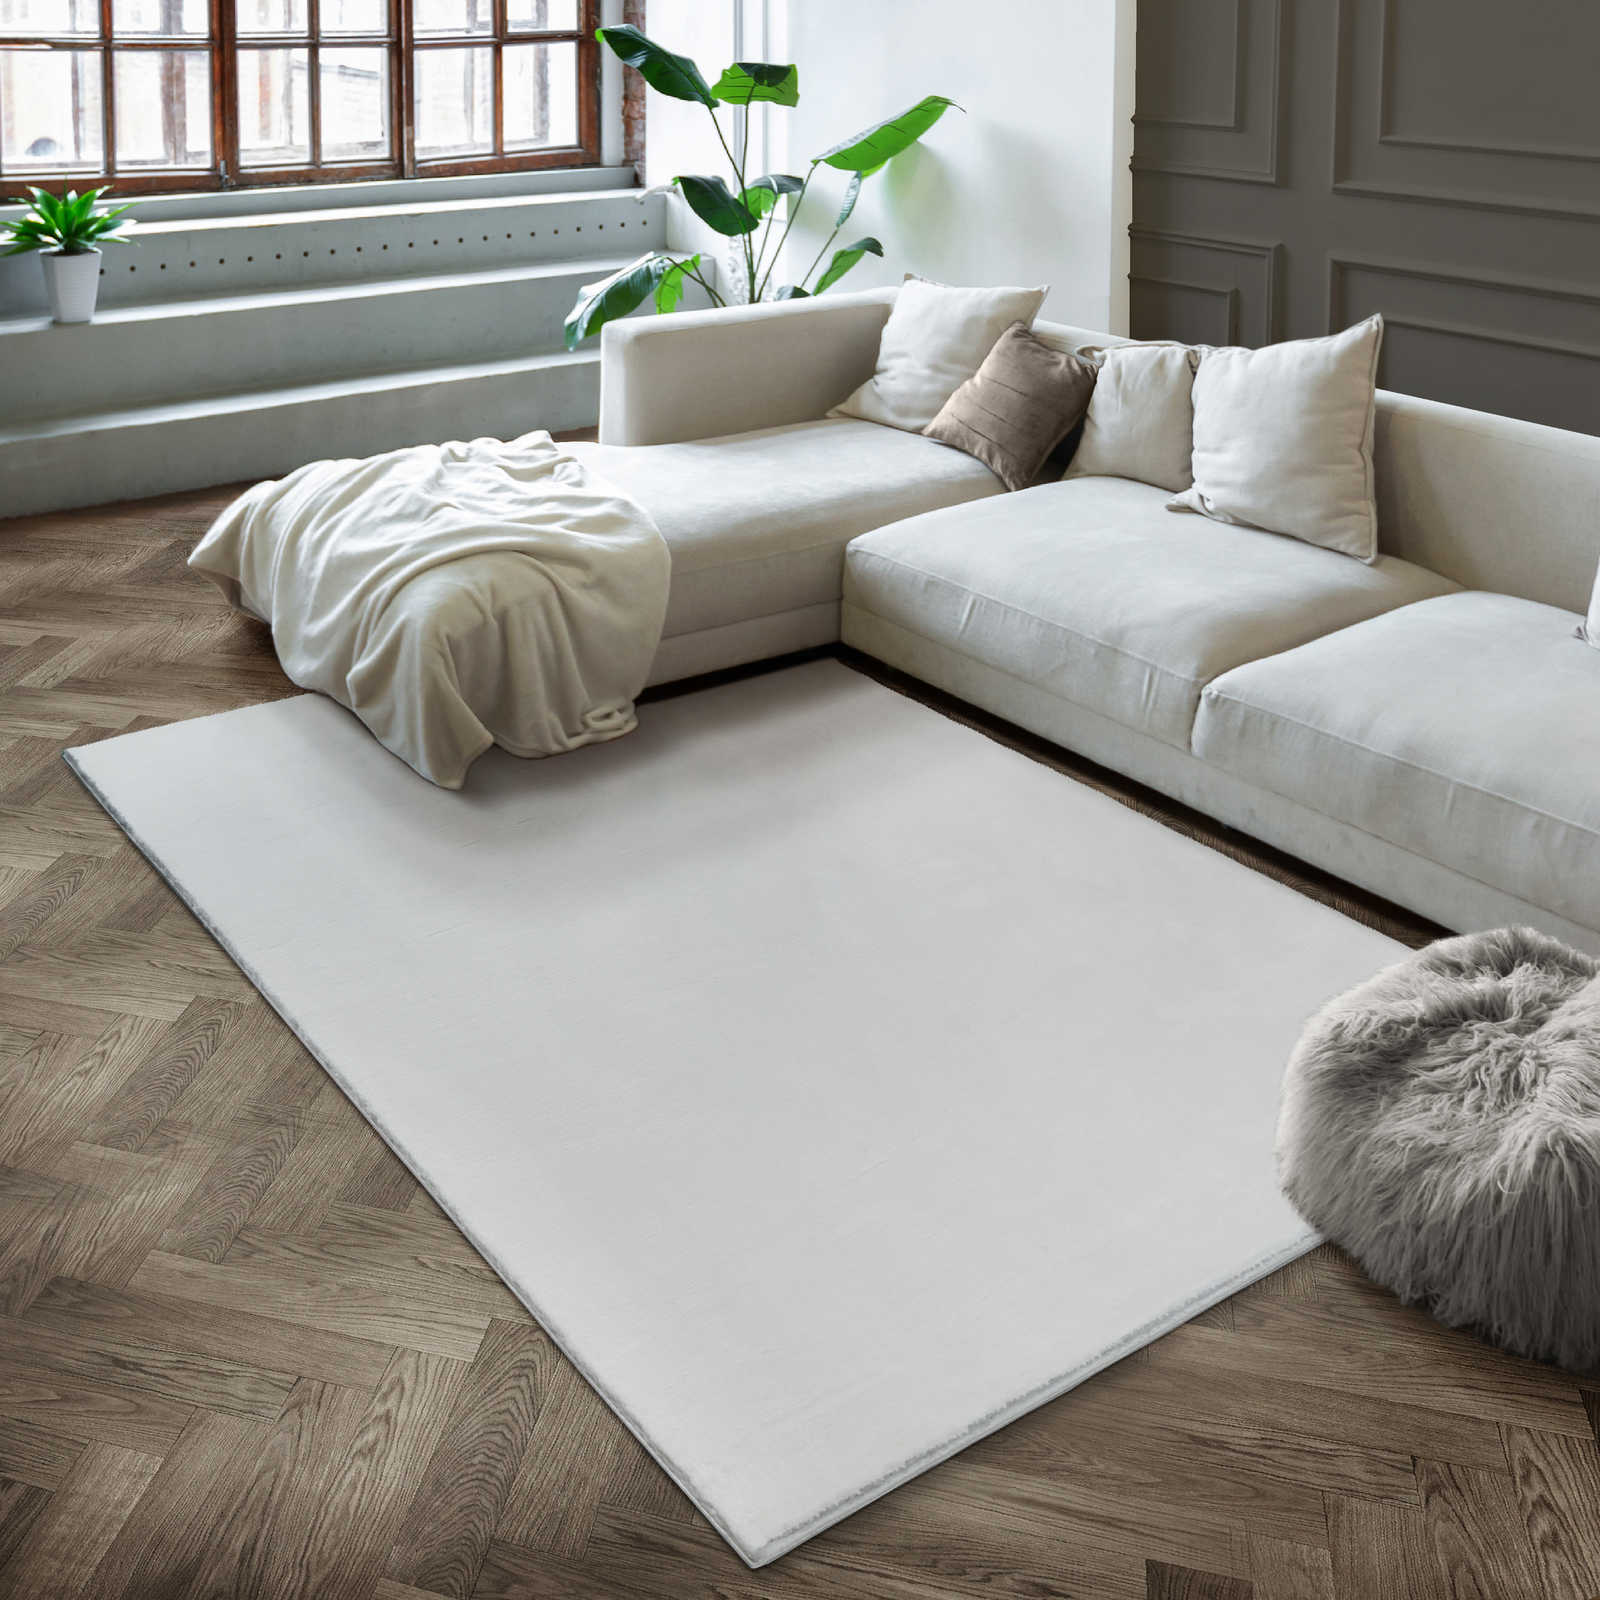 Vaporoso tappeto a pelo alto in un piacevole color crema - 110 x 60 cm
